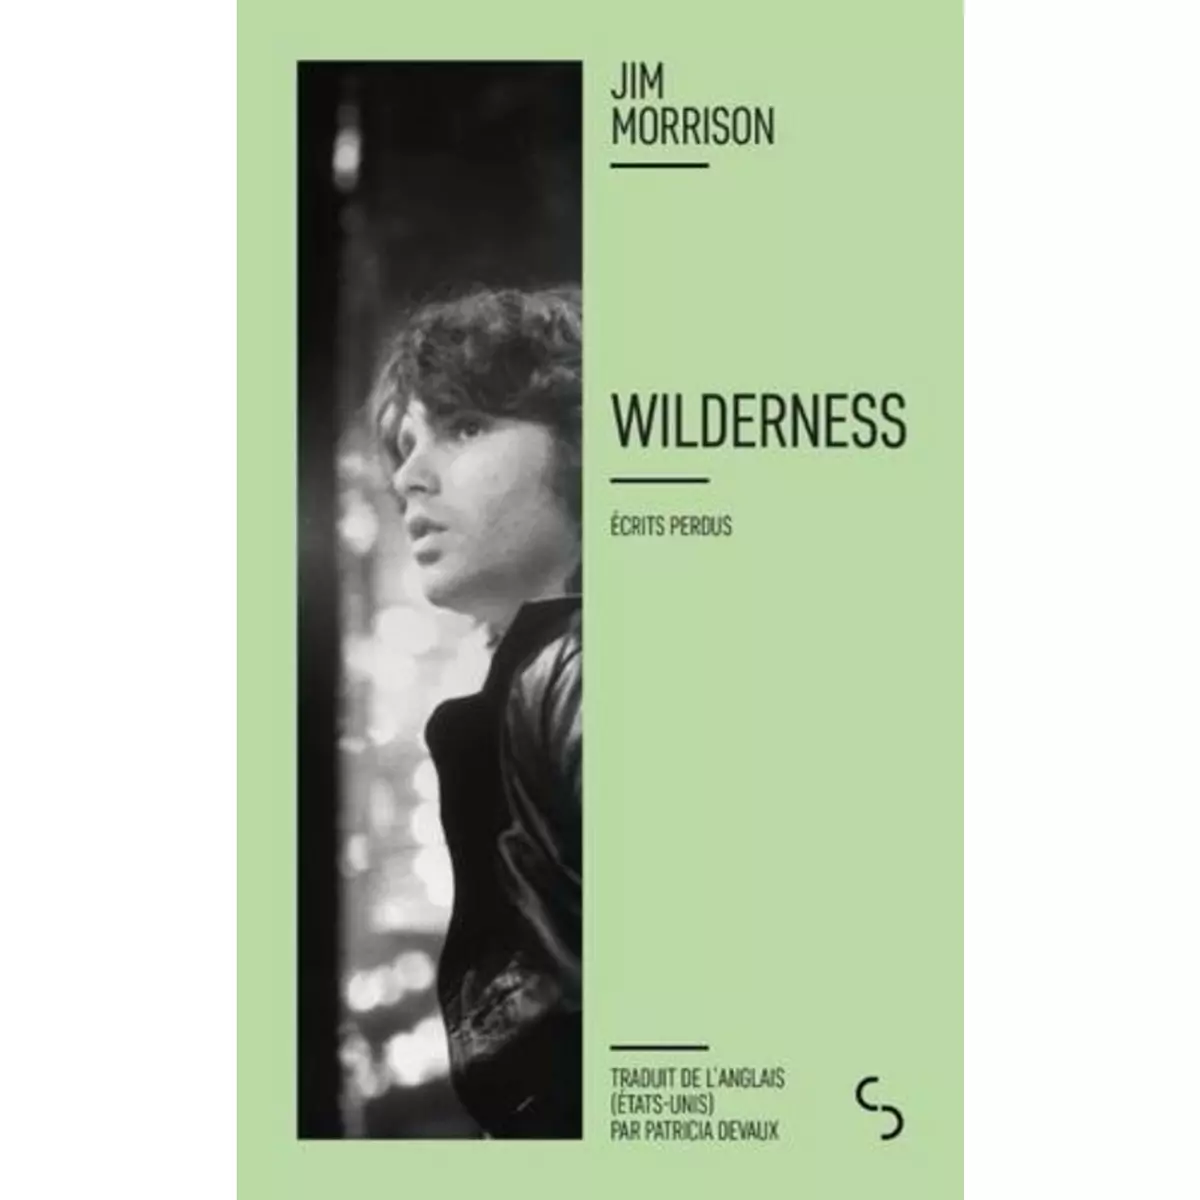  WILDERNESS. ECRITS PERDUS, EDITION BILINGUE FRANCAIS-ANGLAIS, Morrison Jim